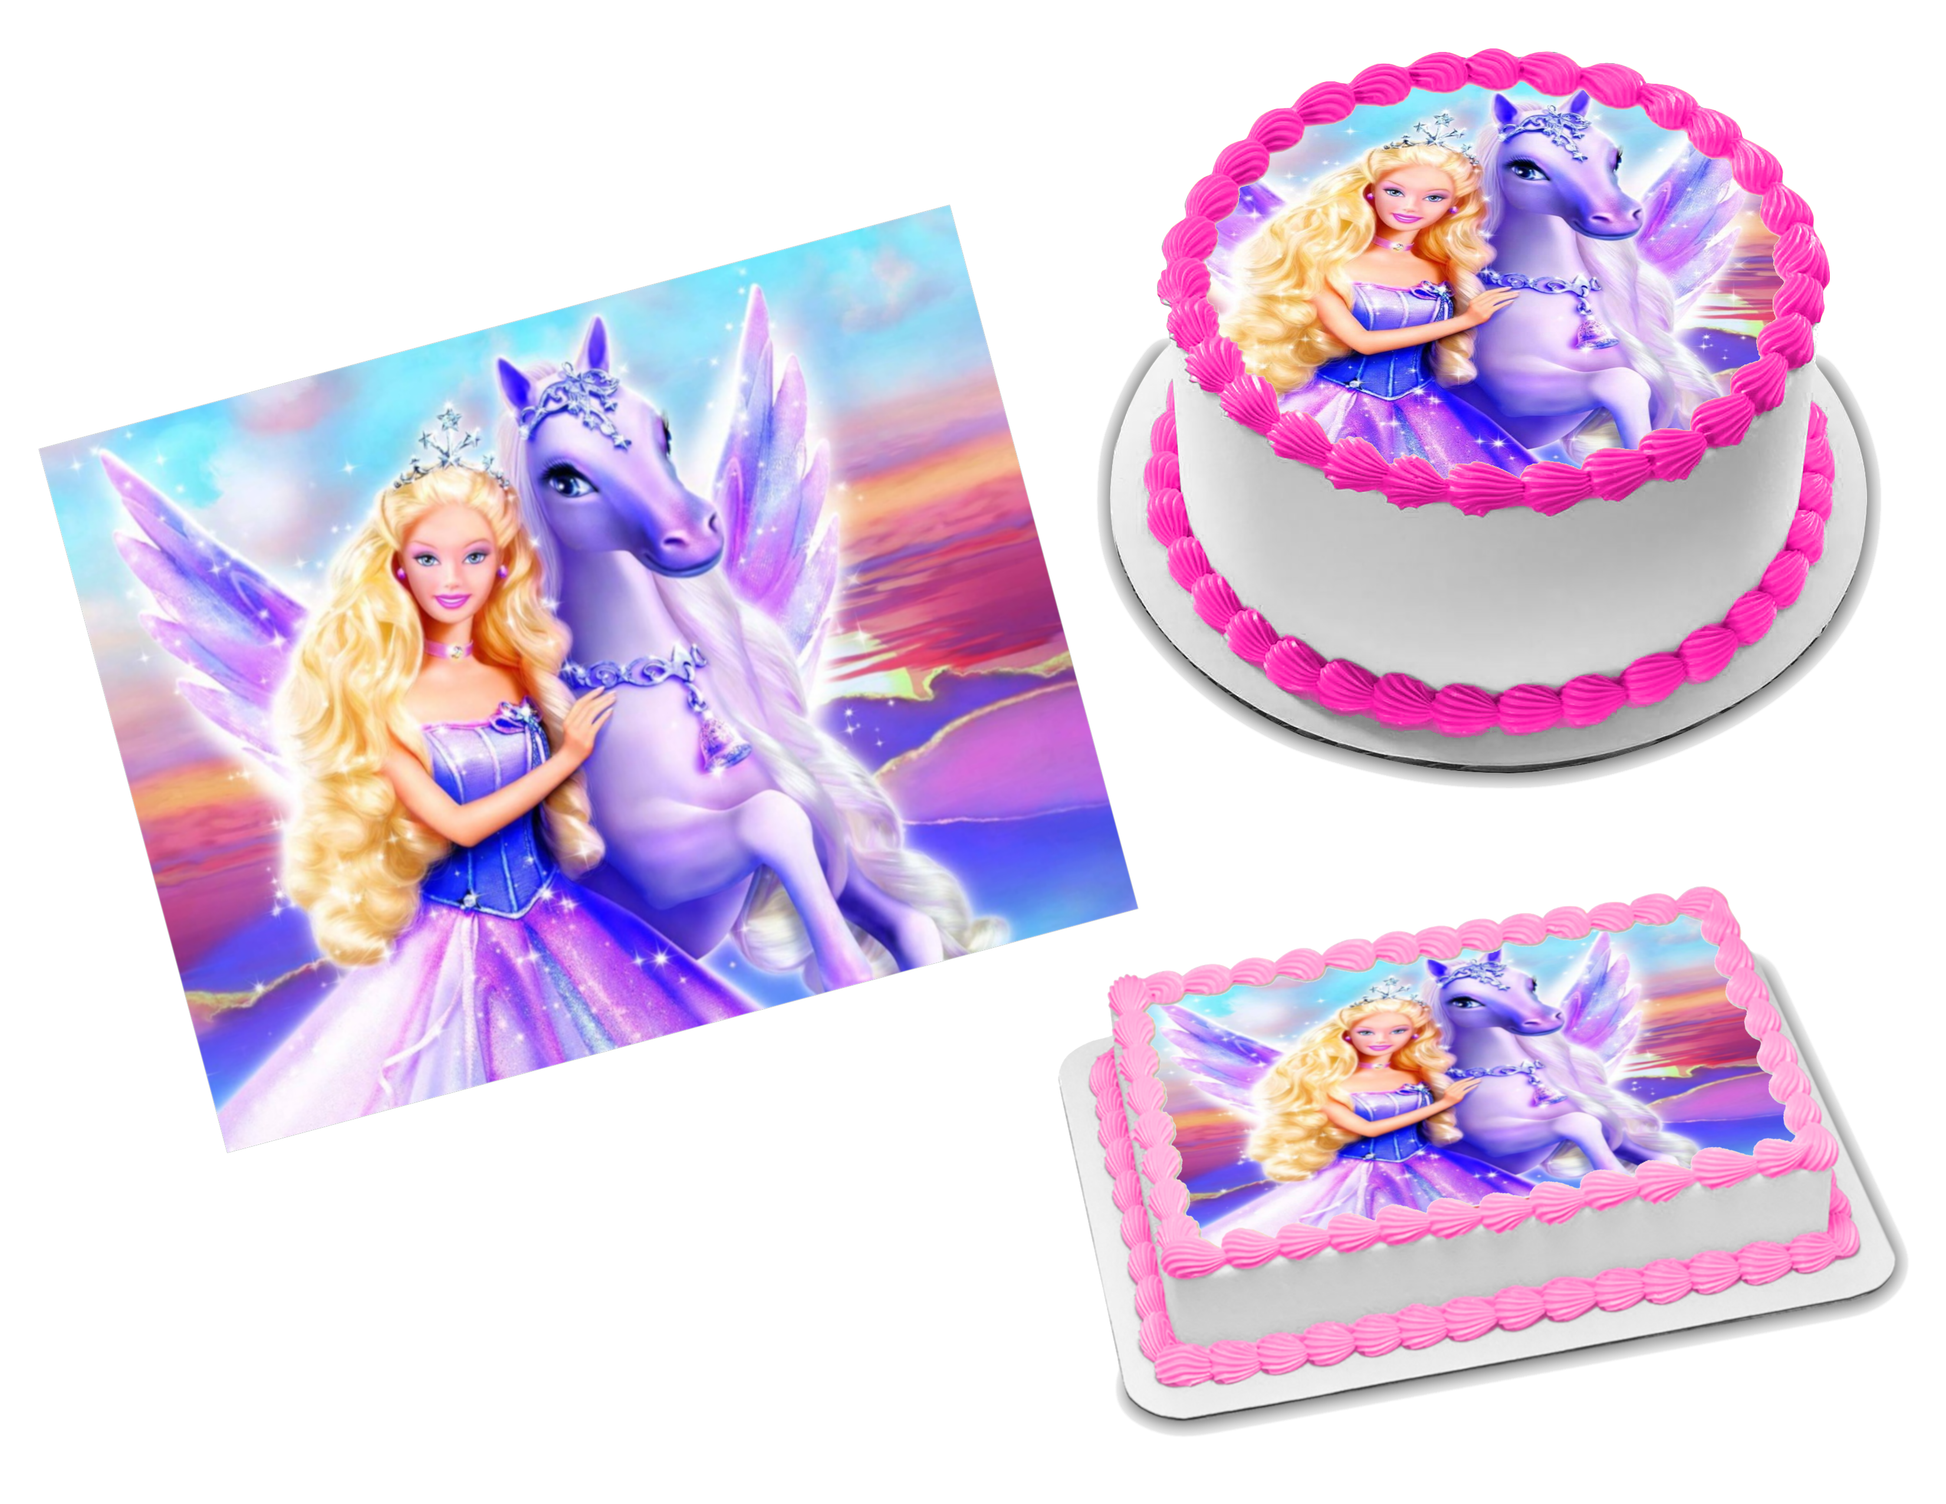 BARBIE Princess and the Popstar immagine torta commestibile topper torta  foglio